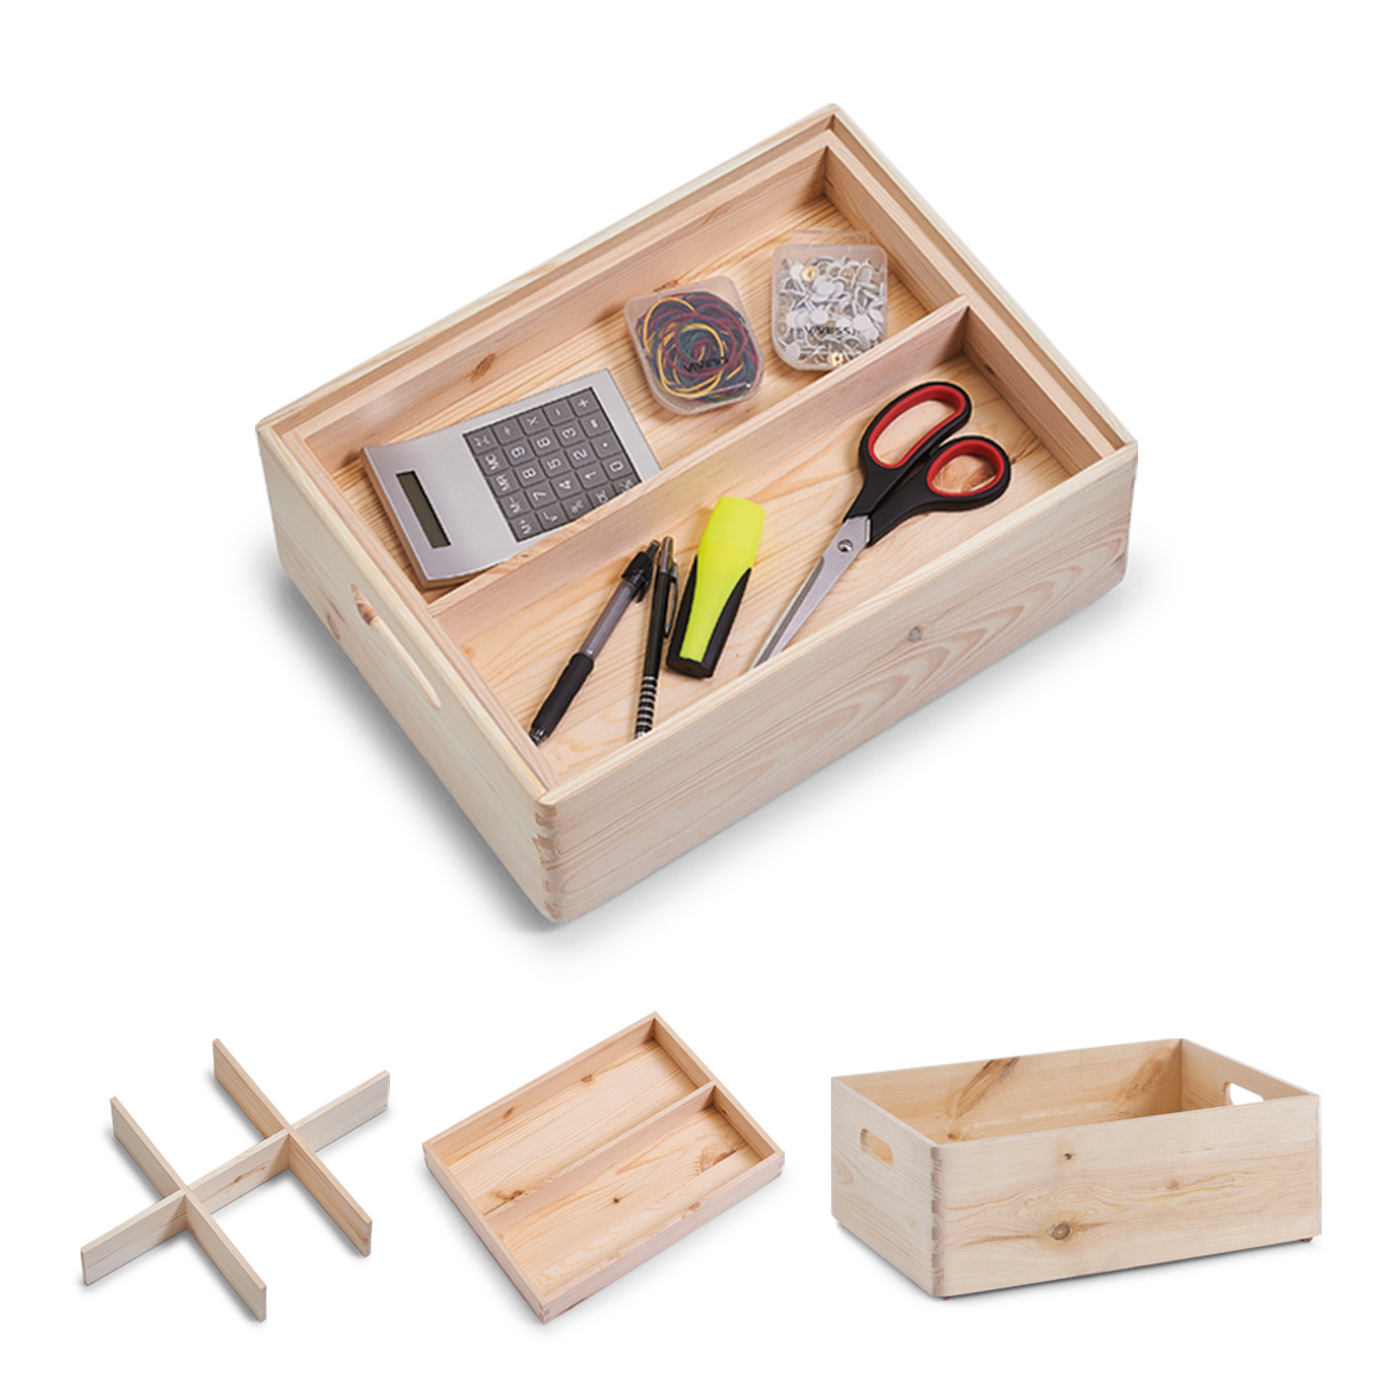 Allzweckkisten-Set, Nadelholz, Farbe: natur. Dieses praktische Kisten-Set mit Fächer-Einteilung und Tabletteinsatz ist ein